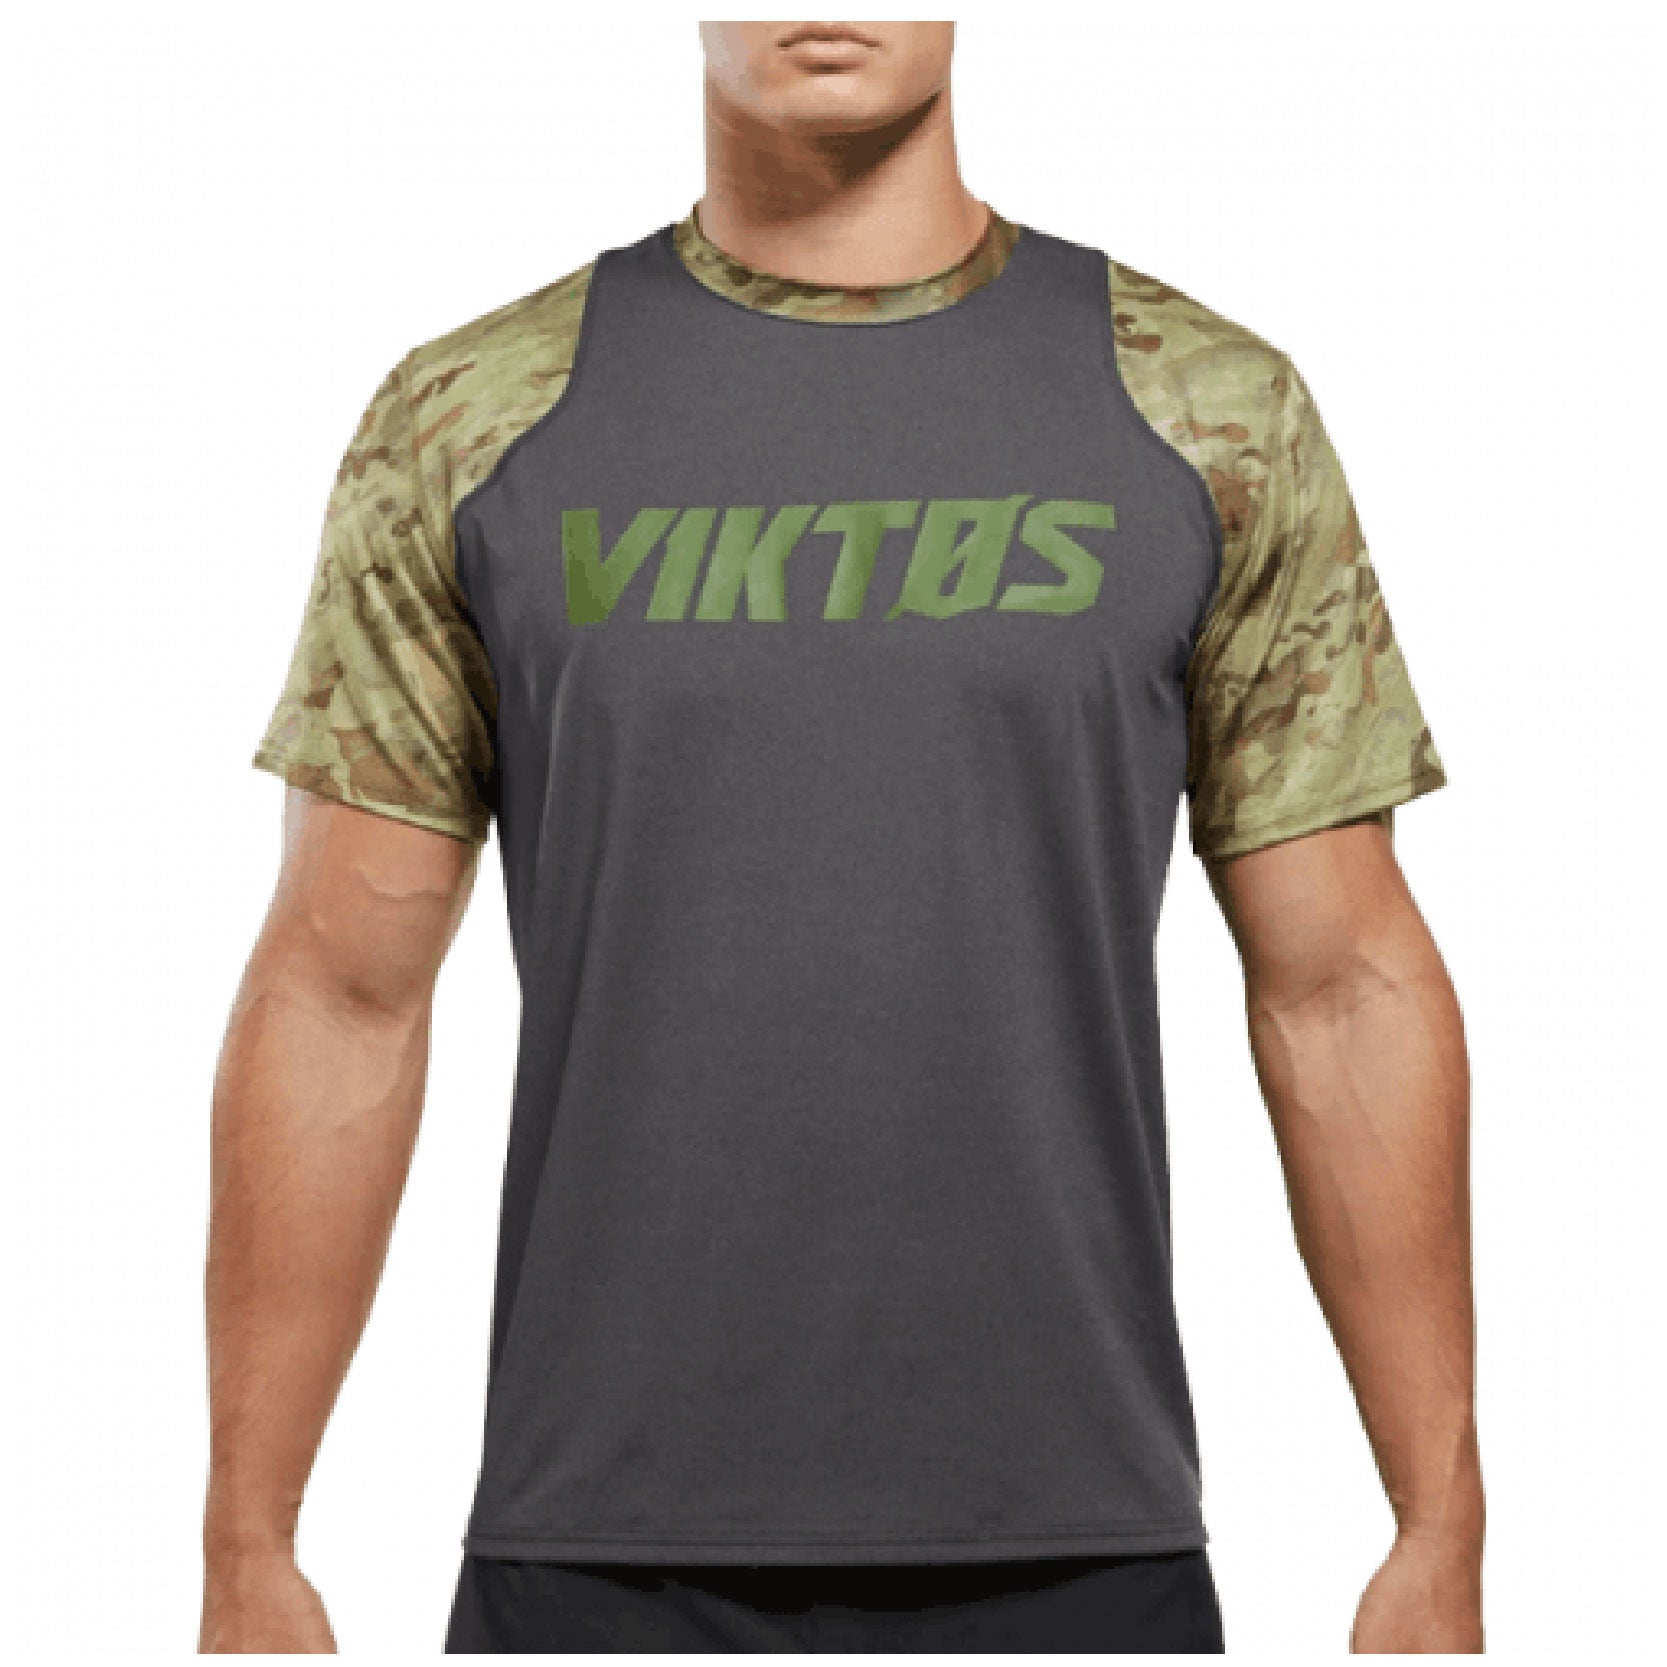 VIKTOS PTXF Shirts [Spartan]